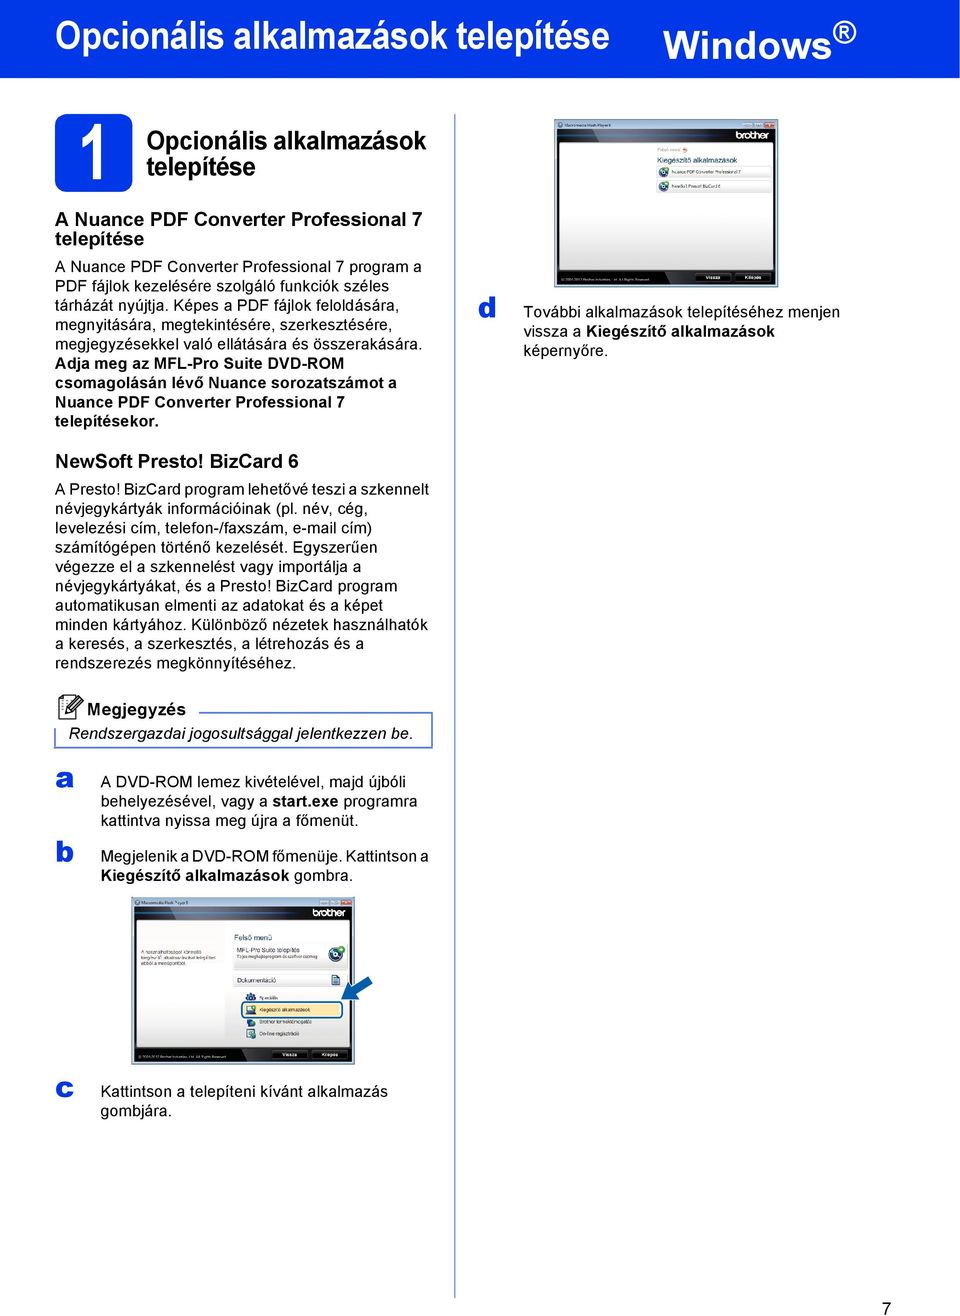 Adj meg z MFL-Pro Suite DVD-ROM somgolásán lévő Nune soroztszámot Nune PDF Converter Professionl 7 telepítésekor. NewSoft Presto! BizCrd 6 A Presto!